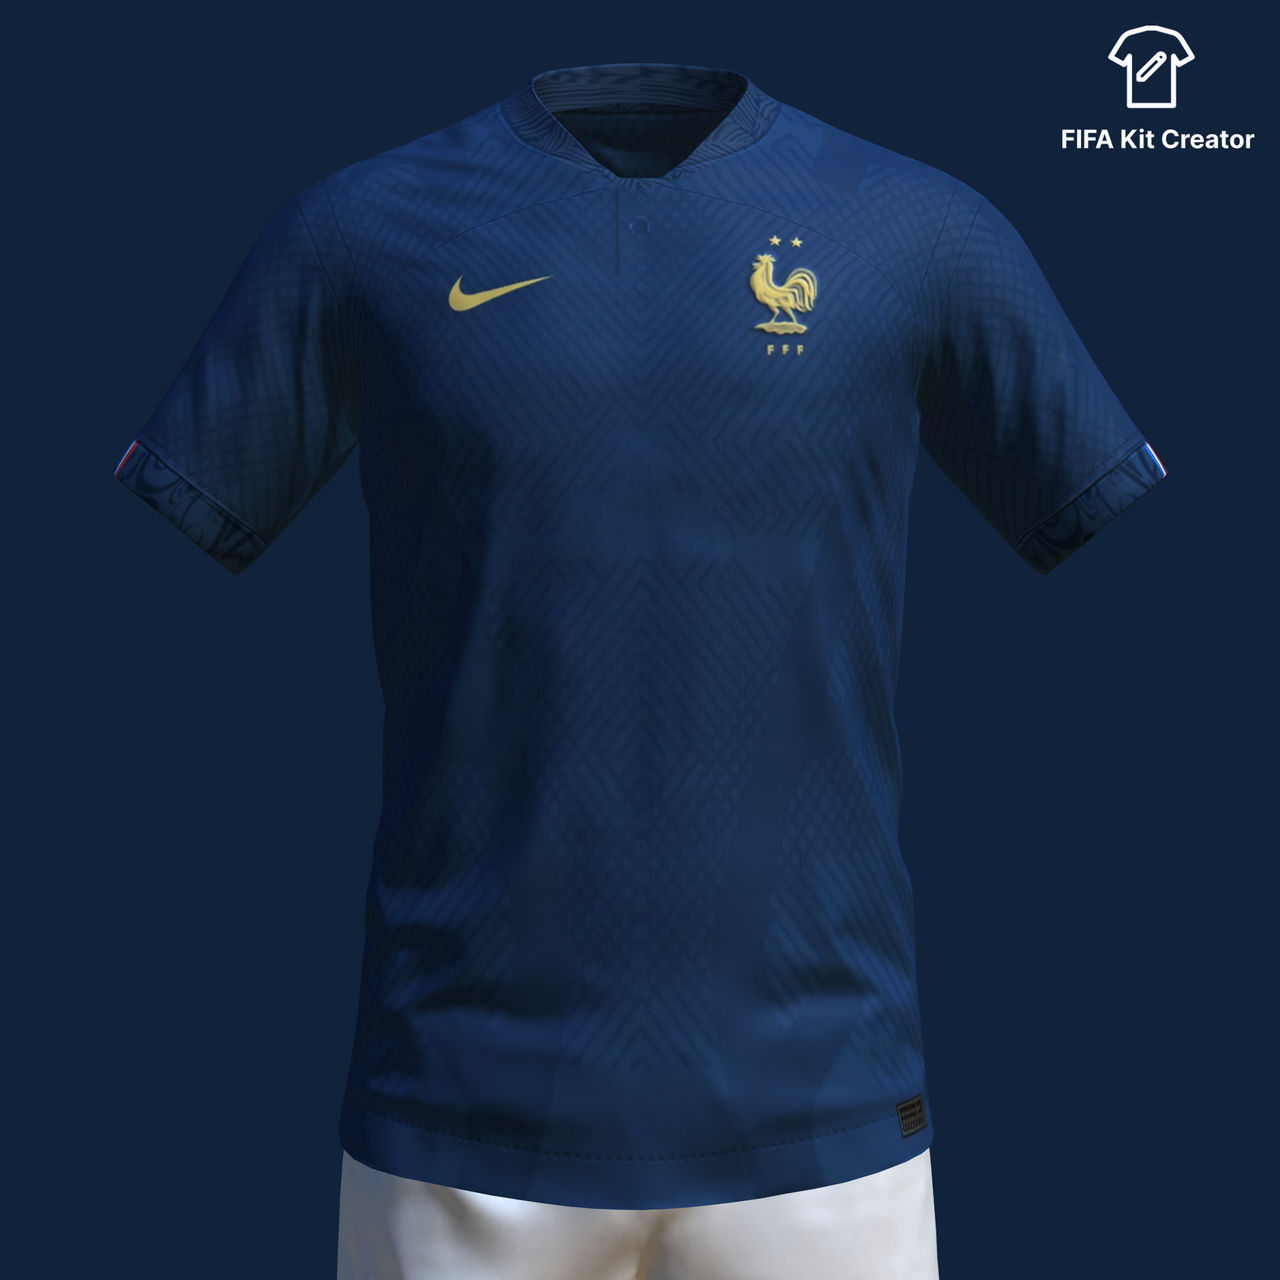 Ferencvárosi TC Third Concept - FIFA Kit Creator Showcase